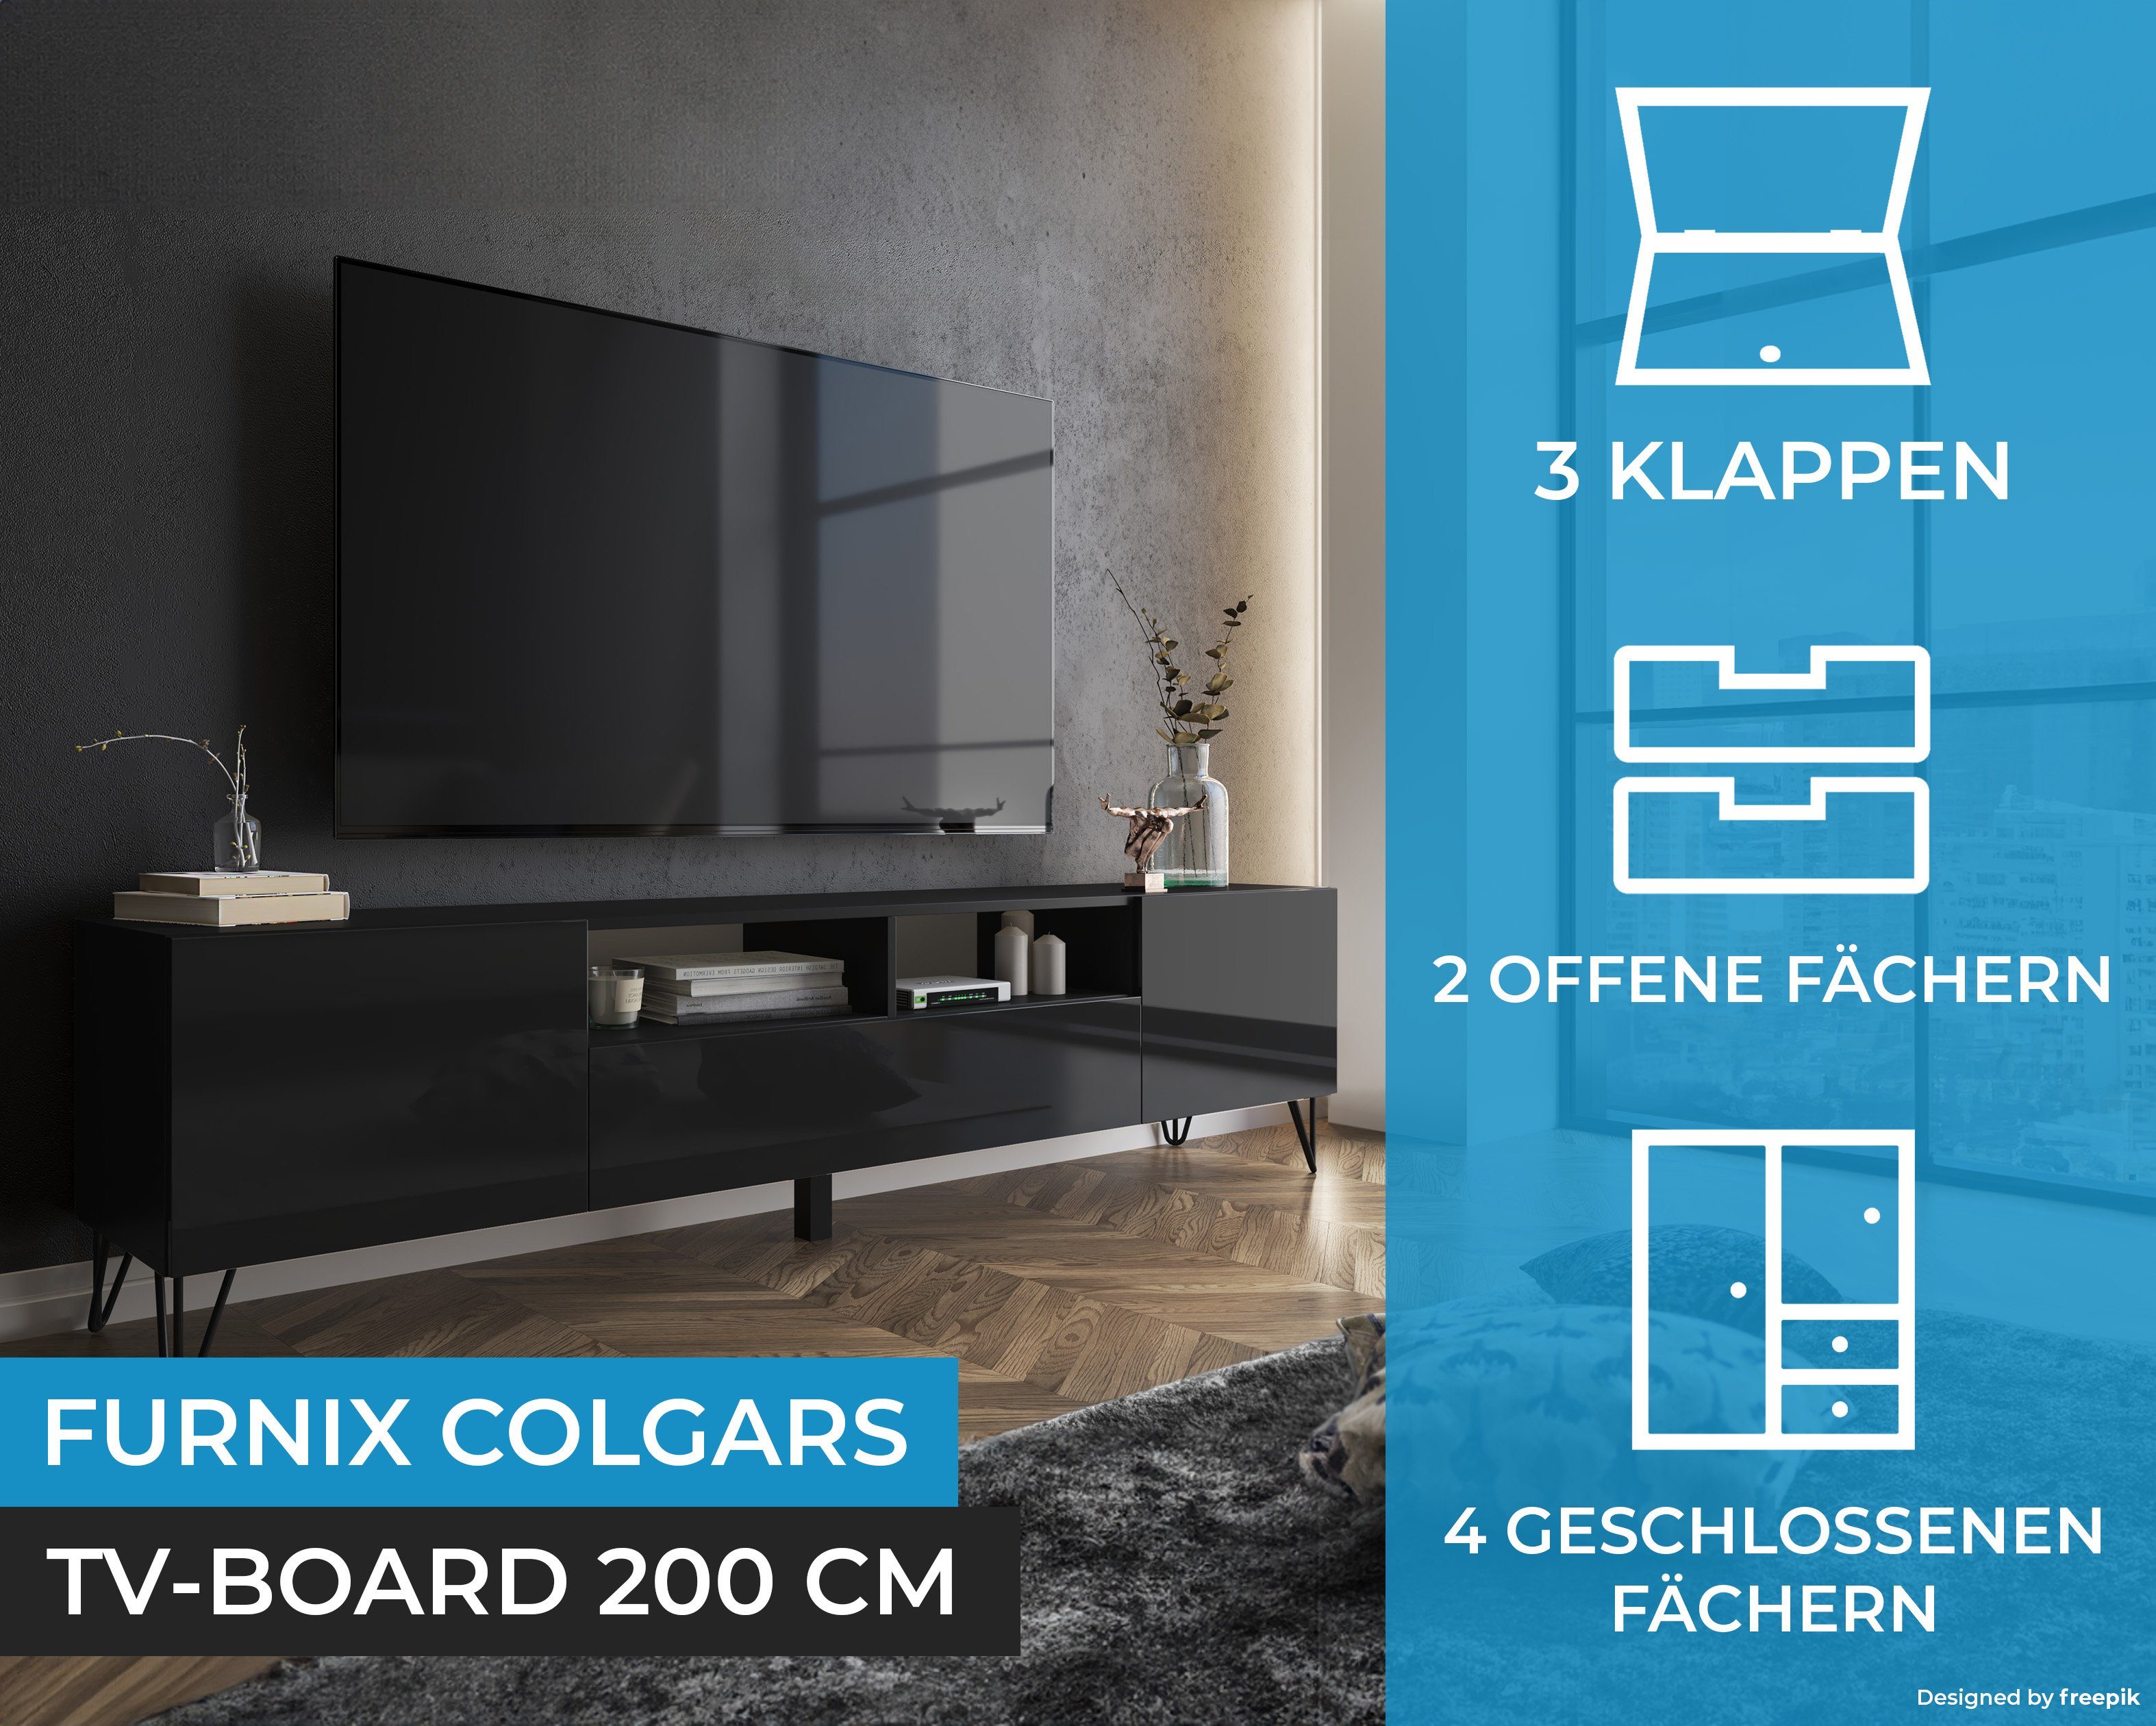 Schwarz/Schwarz B200 M11 Furnix x Glanz mit TV-Schrank Lowboard TV-Board Metallfüßen, x cm T37 HAIRPIN H51 COLGARS